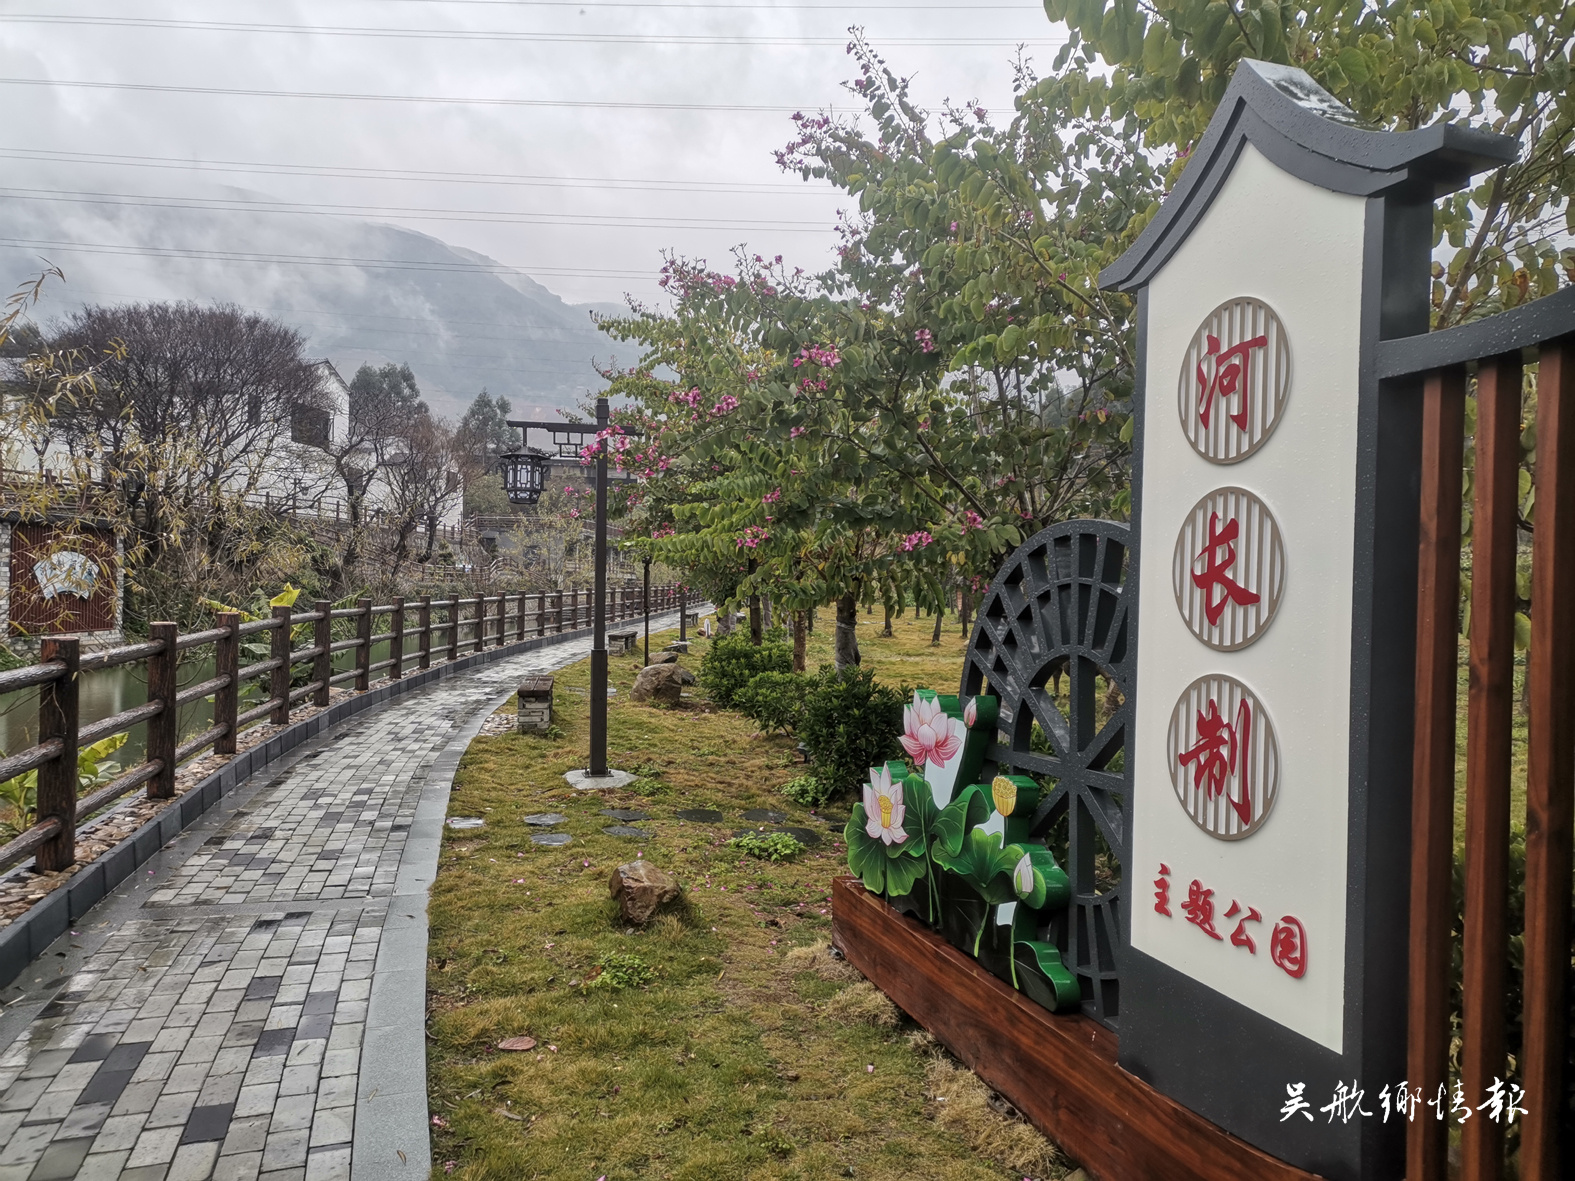 鹤上镇新览村建设河长制主题公园 打造河湖文化宣传新阵地